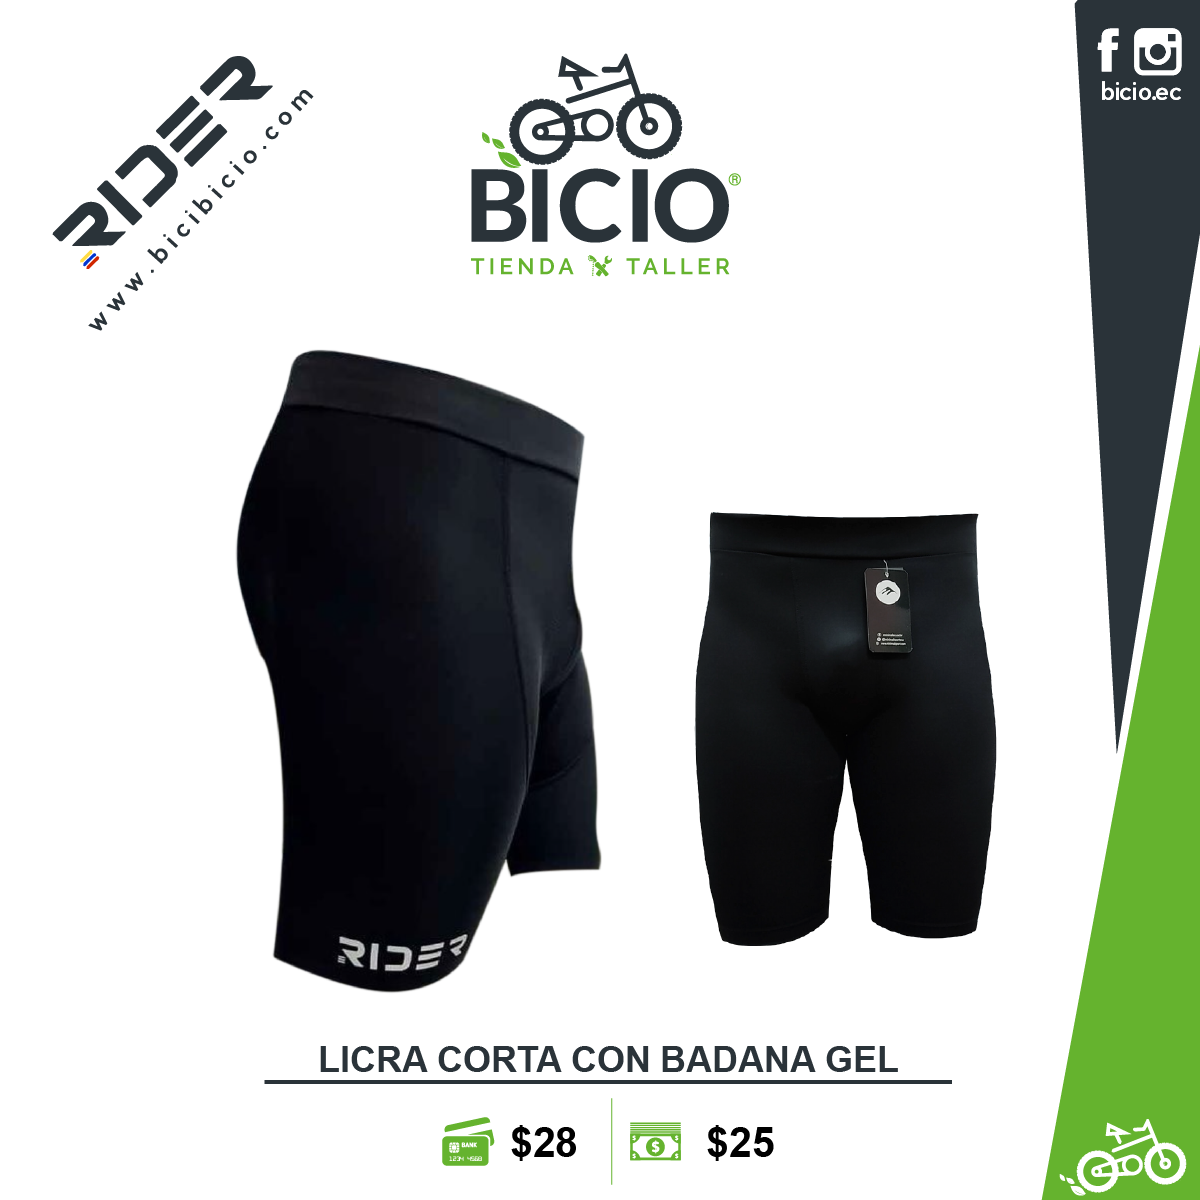 Licra corta Rider - Bicio tienda - taller de bicicletas